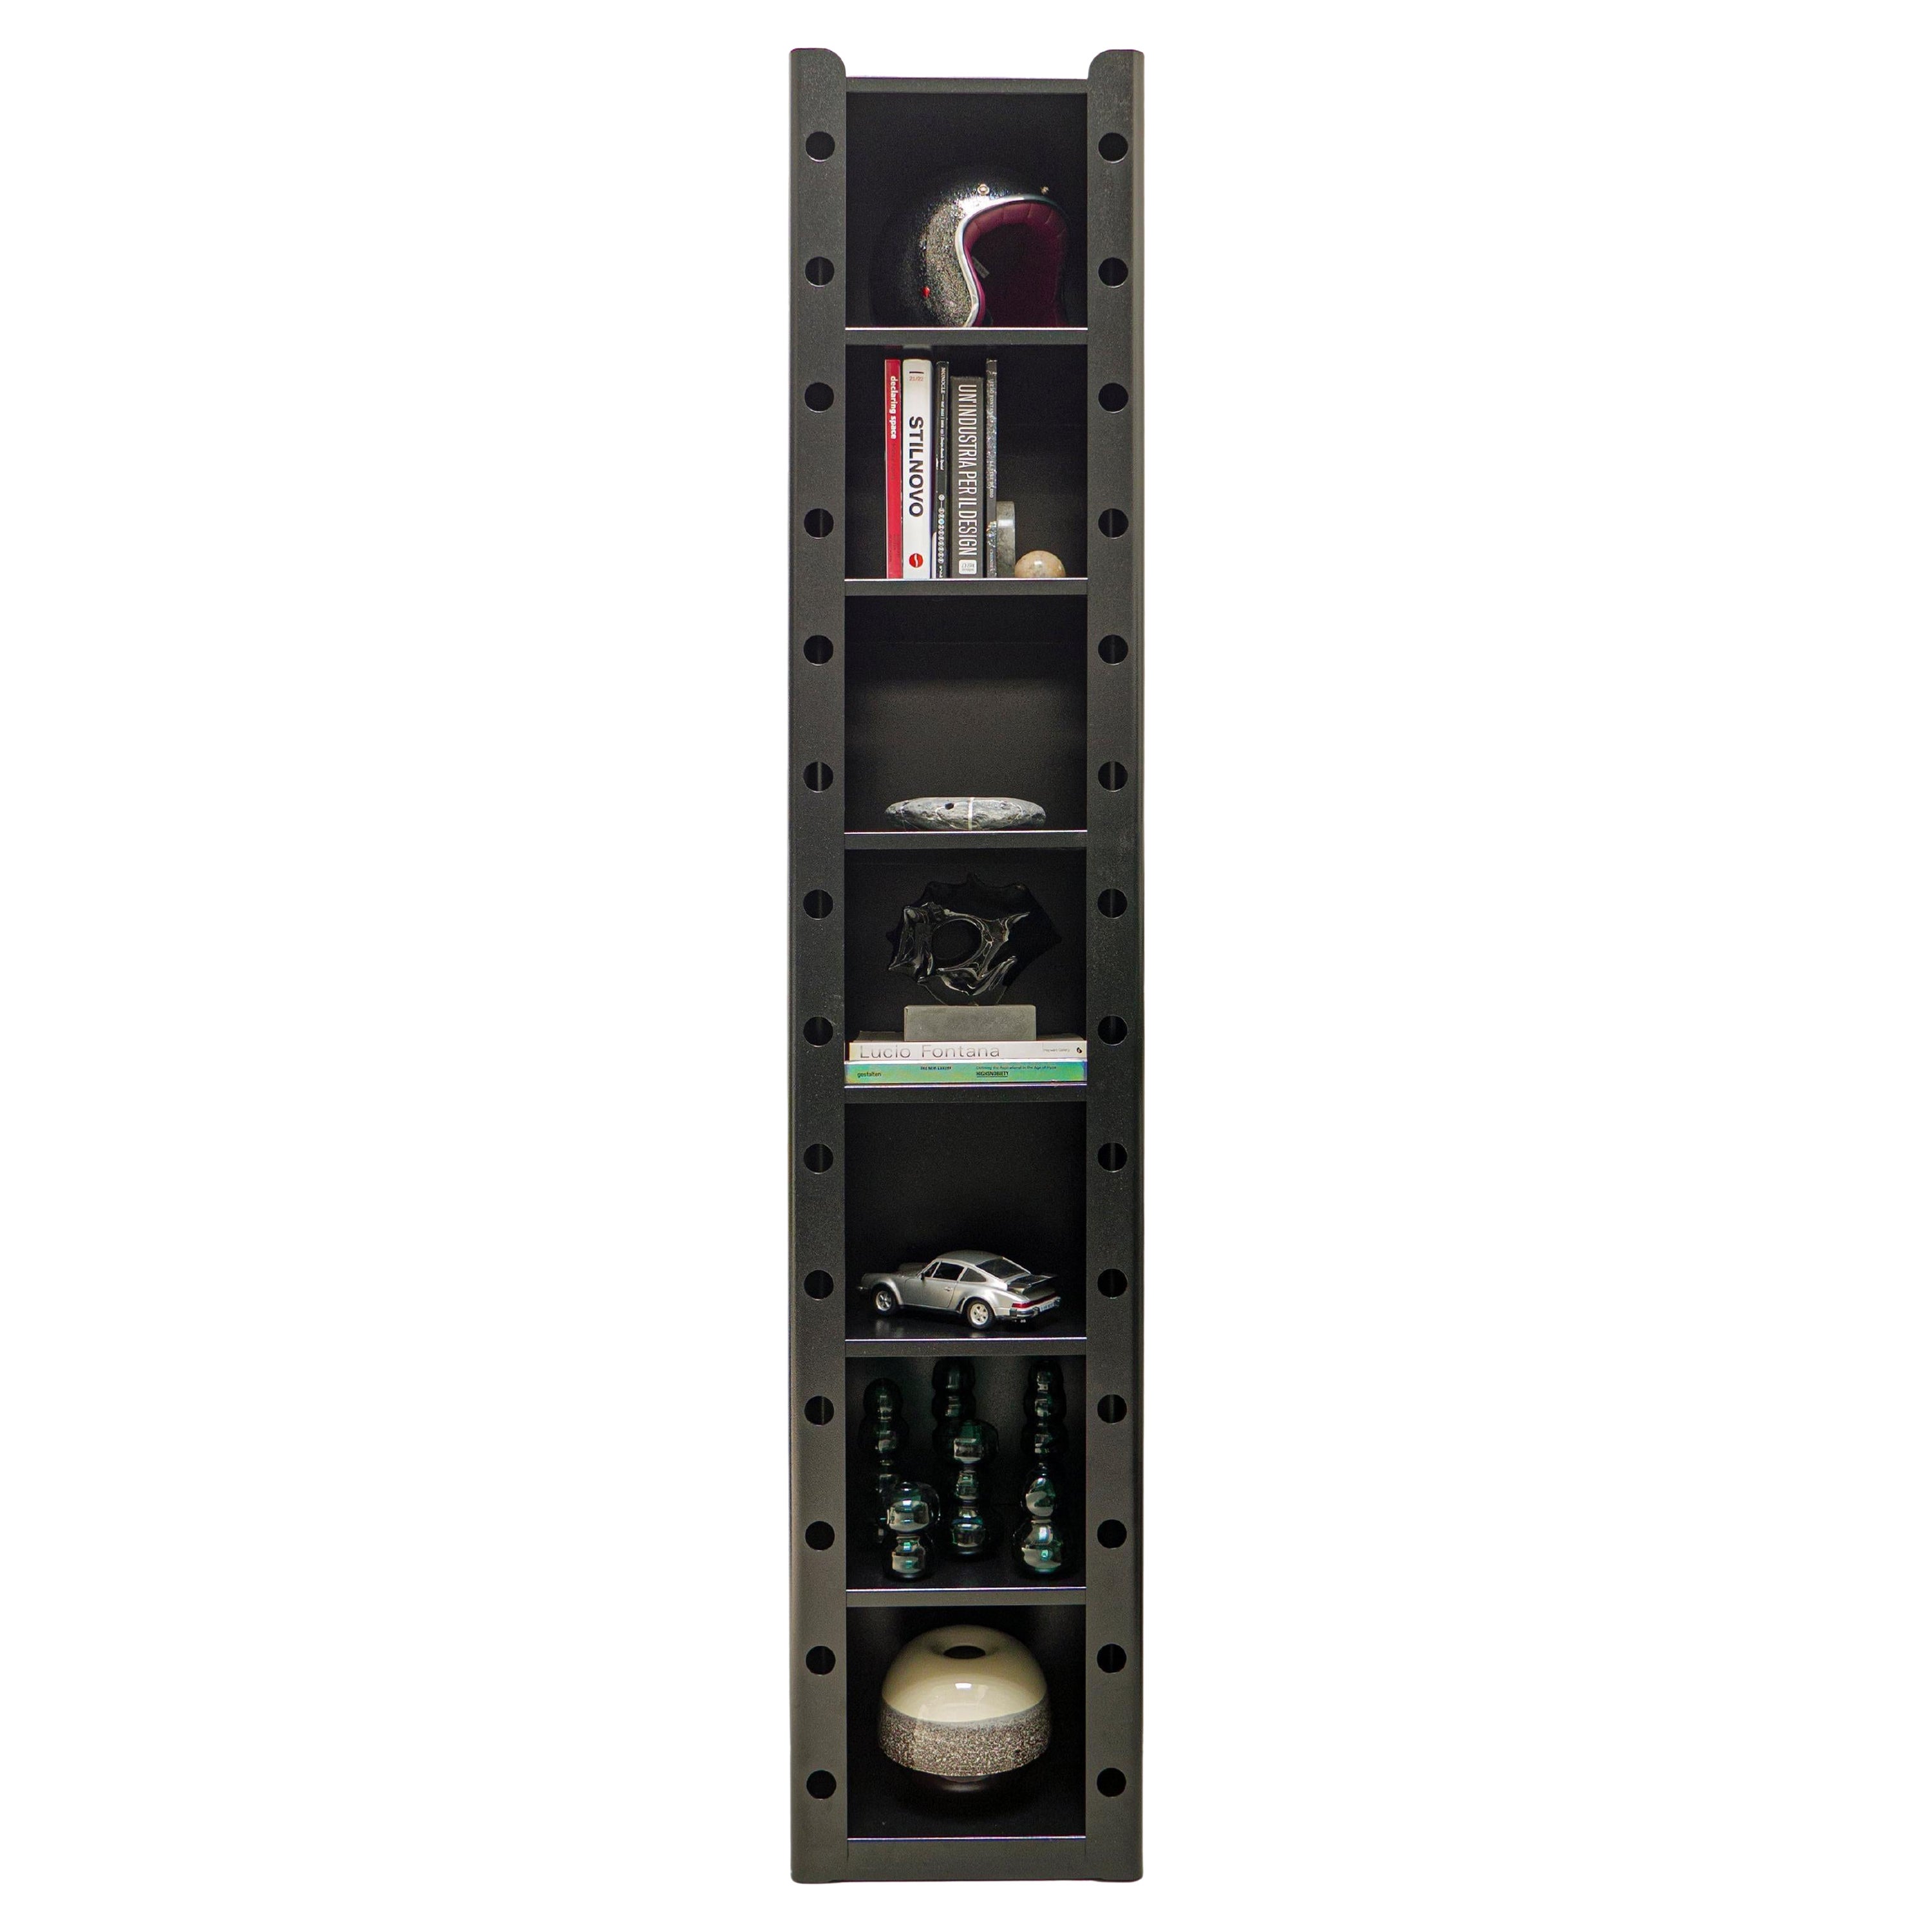 Spinzi Meccano Bookcase, mobilier industriel contemporain en métal du 21e siècle en vente